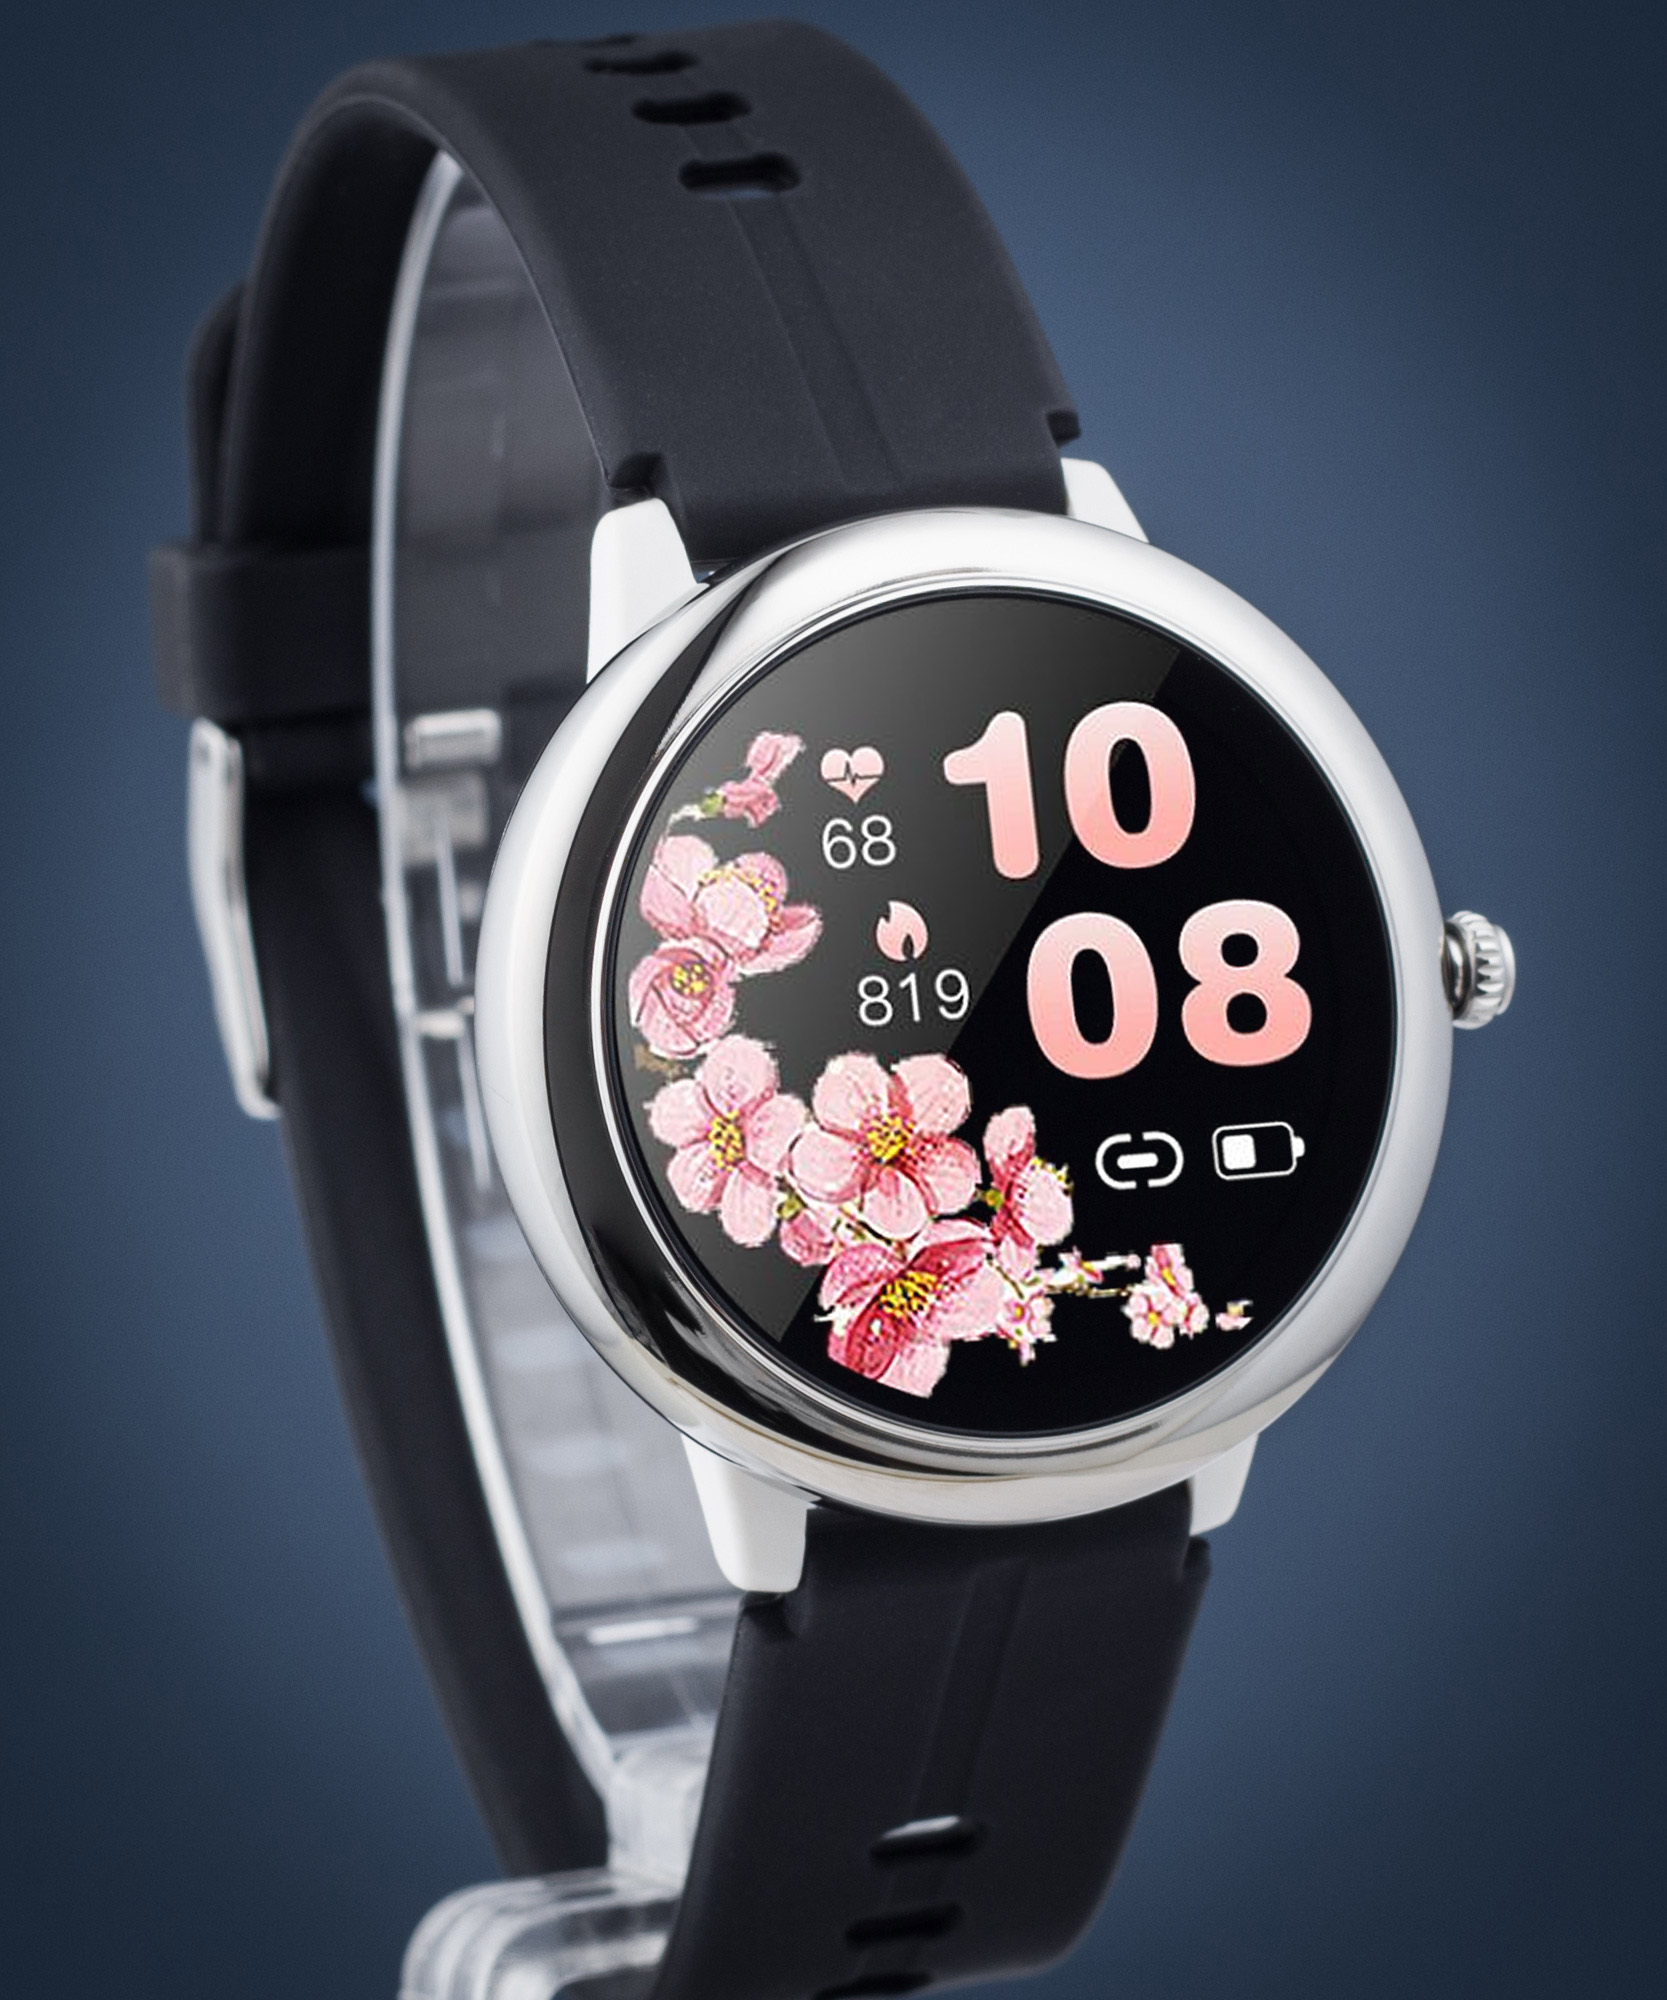 Pacific 40 Sport Black smartwatch là sự kết hợp hoàn hảo giữa công nghệ và thể thao ngoài trời. Với khả năng chống nước đạt chuẩn IP68, tích hợp nhiều tính năng như đếm bước chân và giám sát nhịp tim, chiếc đồng hồ này sẽ giúp cho bạn tận dụng tối đa mỗi khoảnh khắc trong cuộc sống. Hãy cùng khám phá những tính năng ấn tượng của chiếc đồng hồ thông minh này qua hình ảnh liên quan.